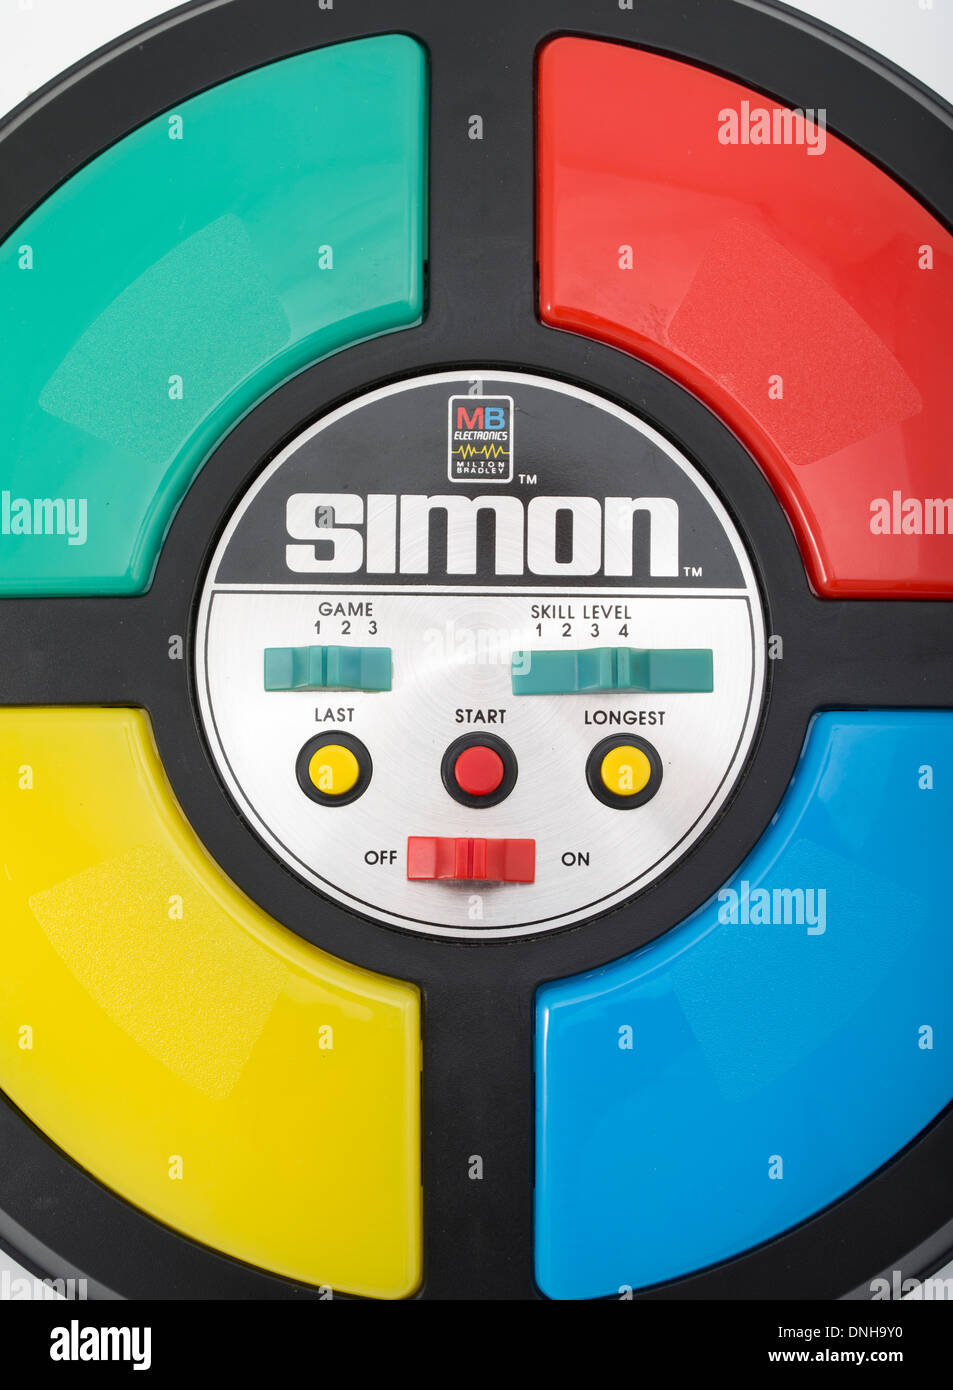 mb simon electronic game